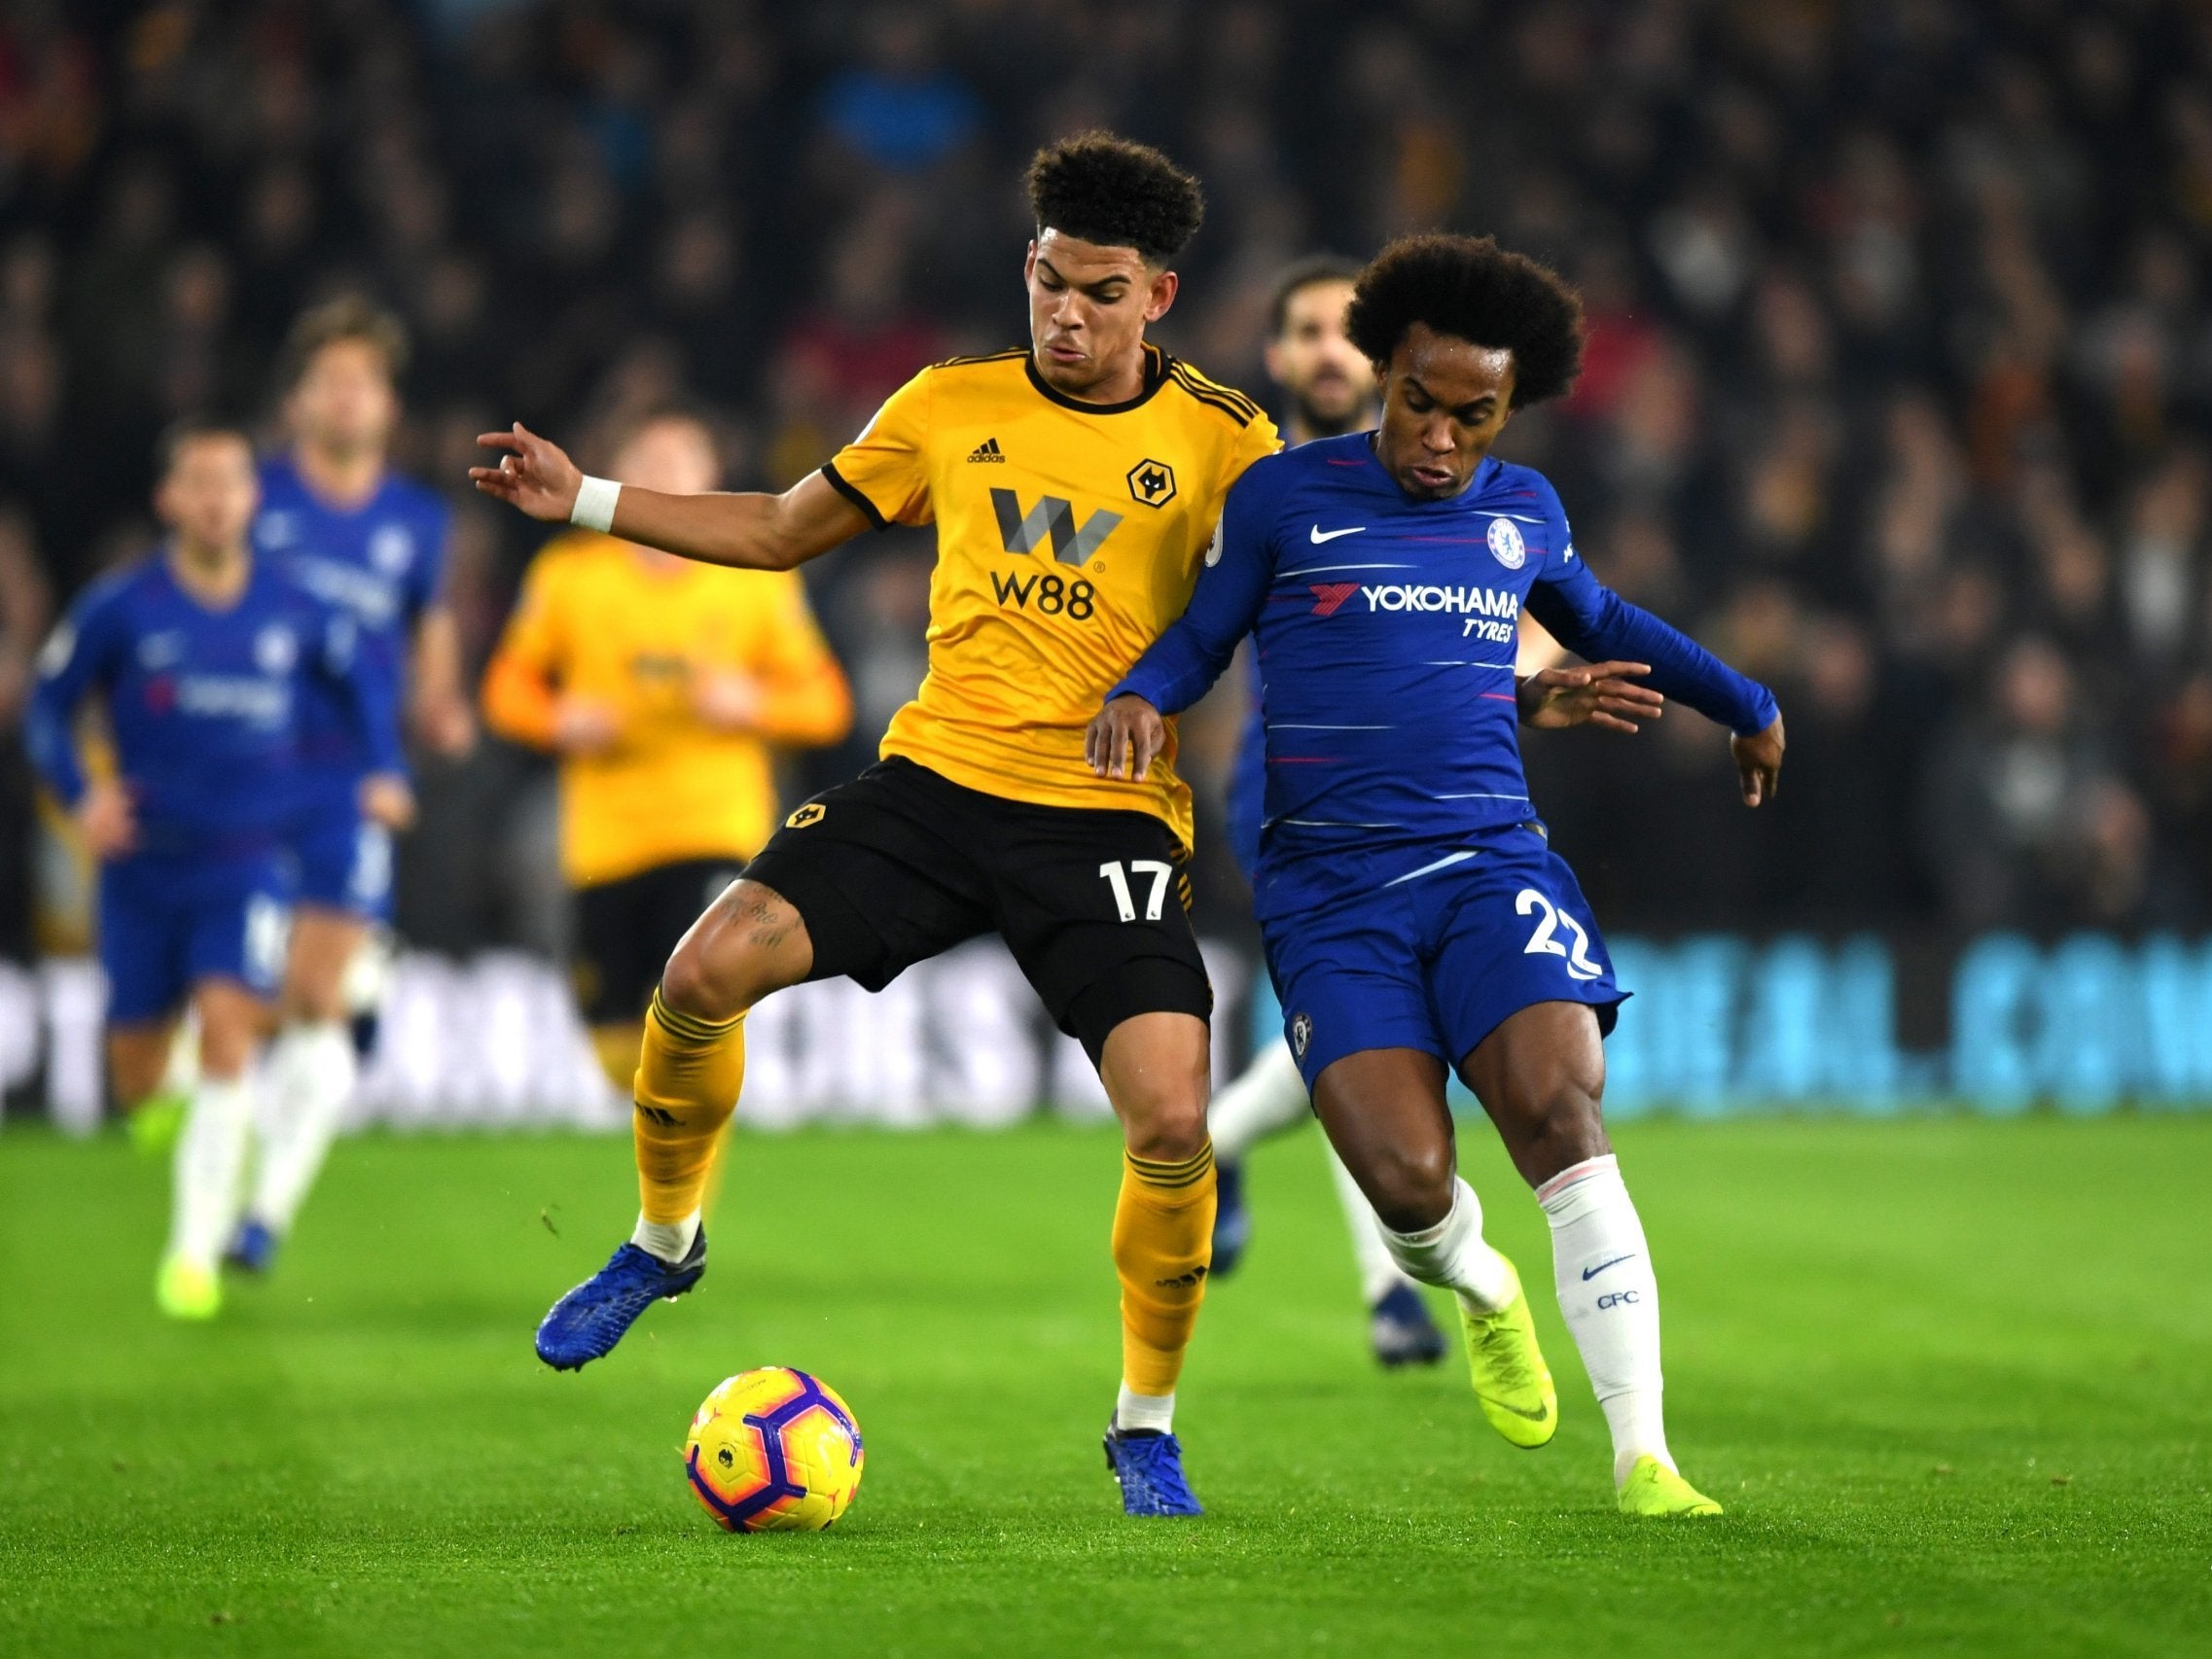 Wolves vs Chelsea LIVE – Premier League latest score and goal updates